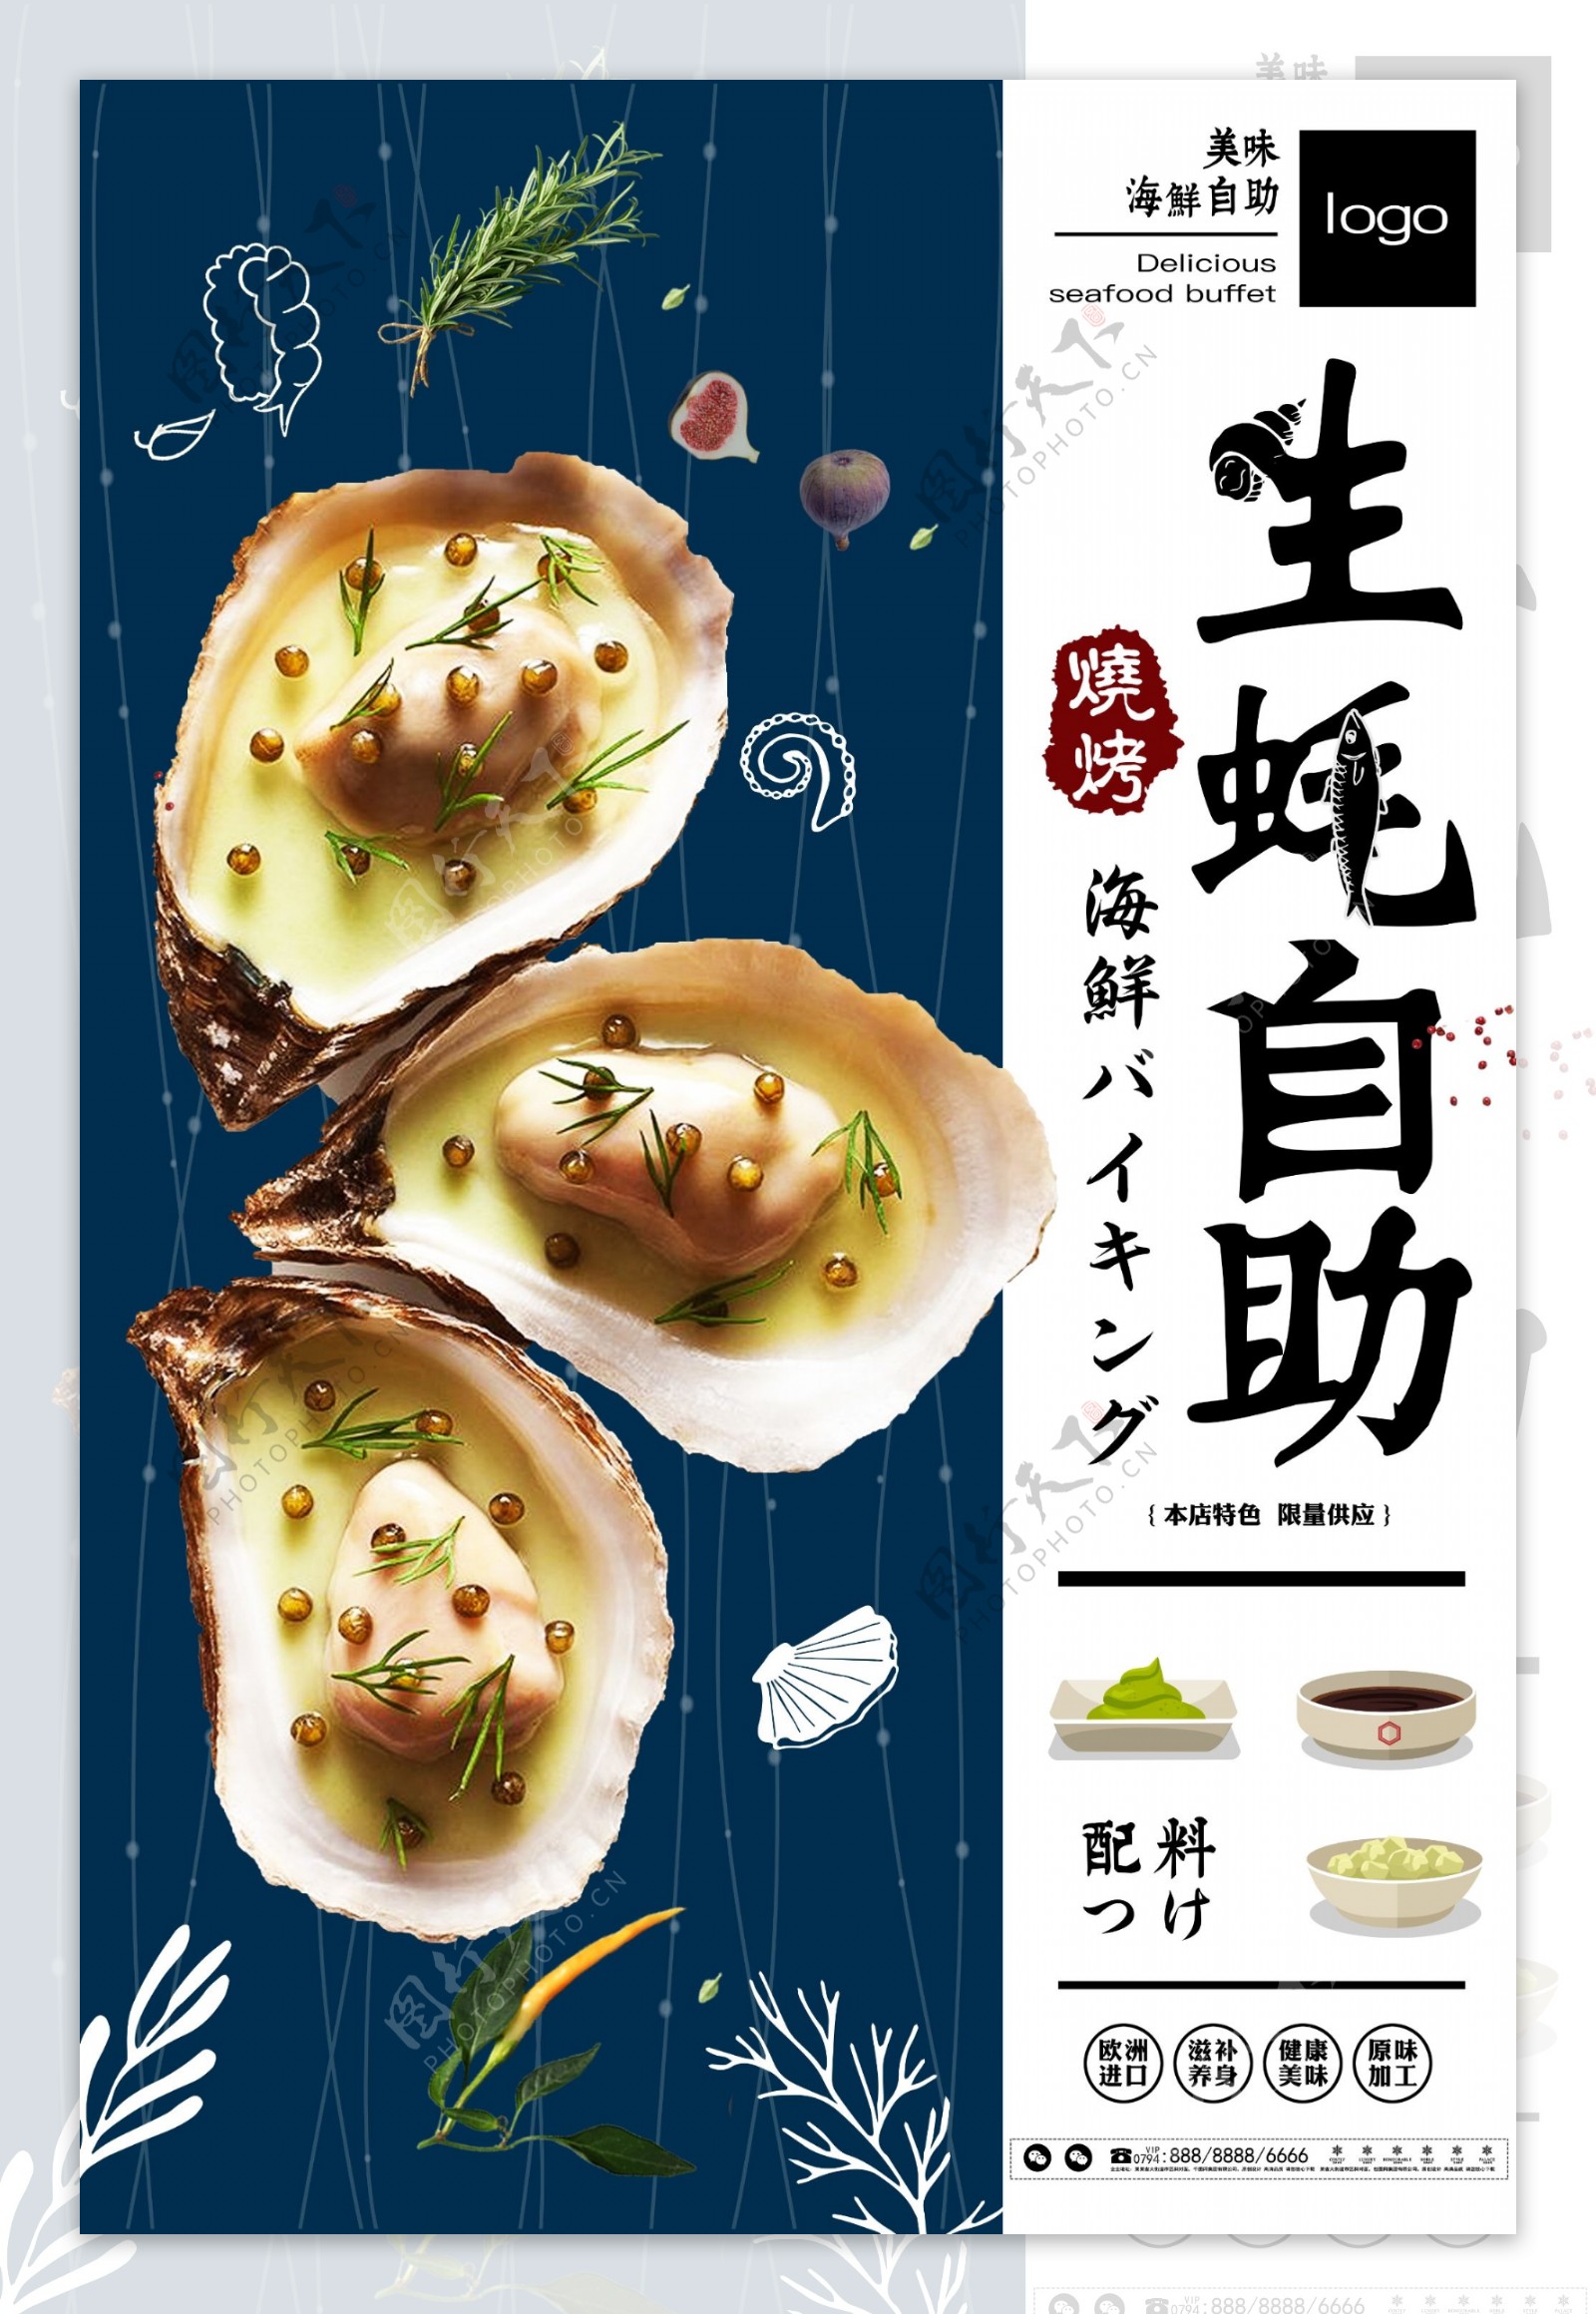 夏日清新简约生蚝烧烤美食宣传海报